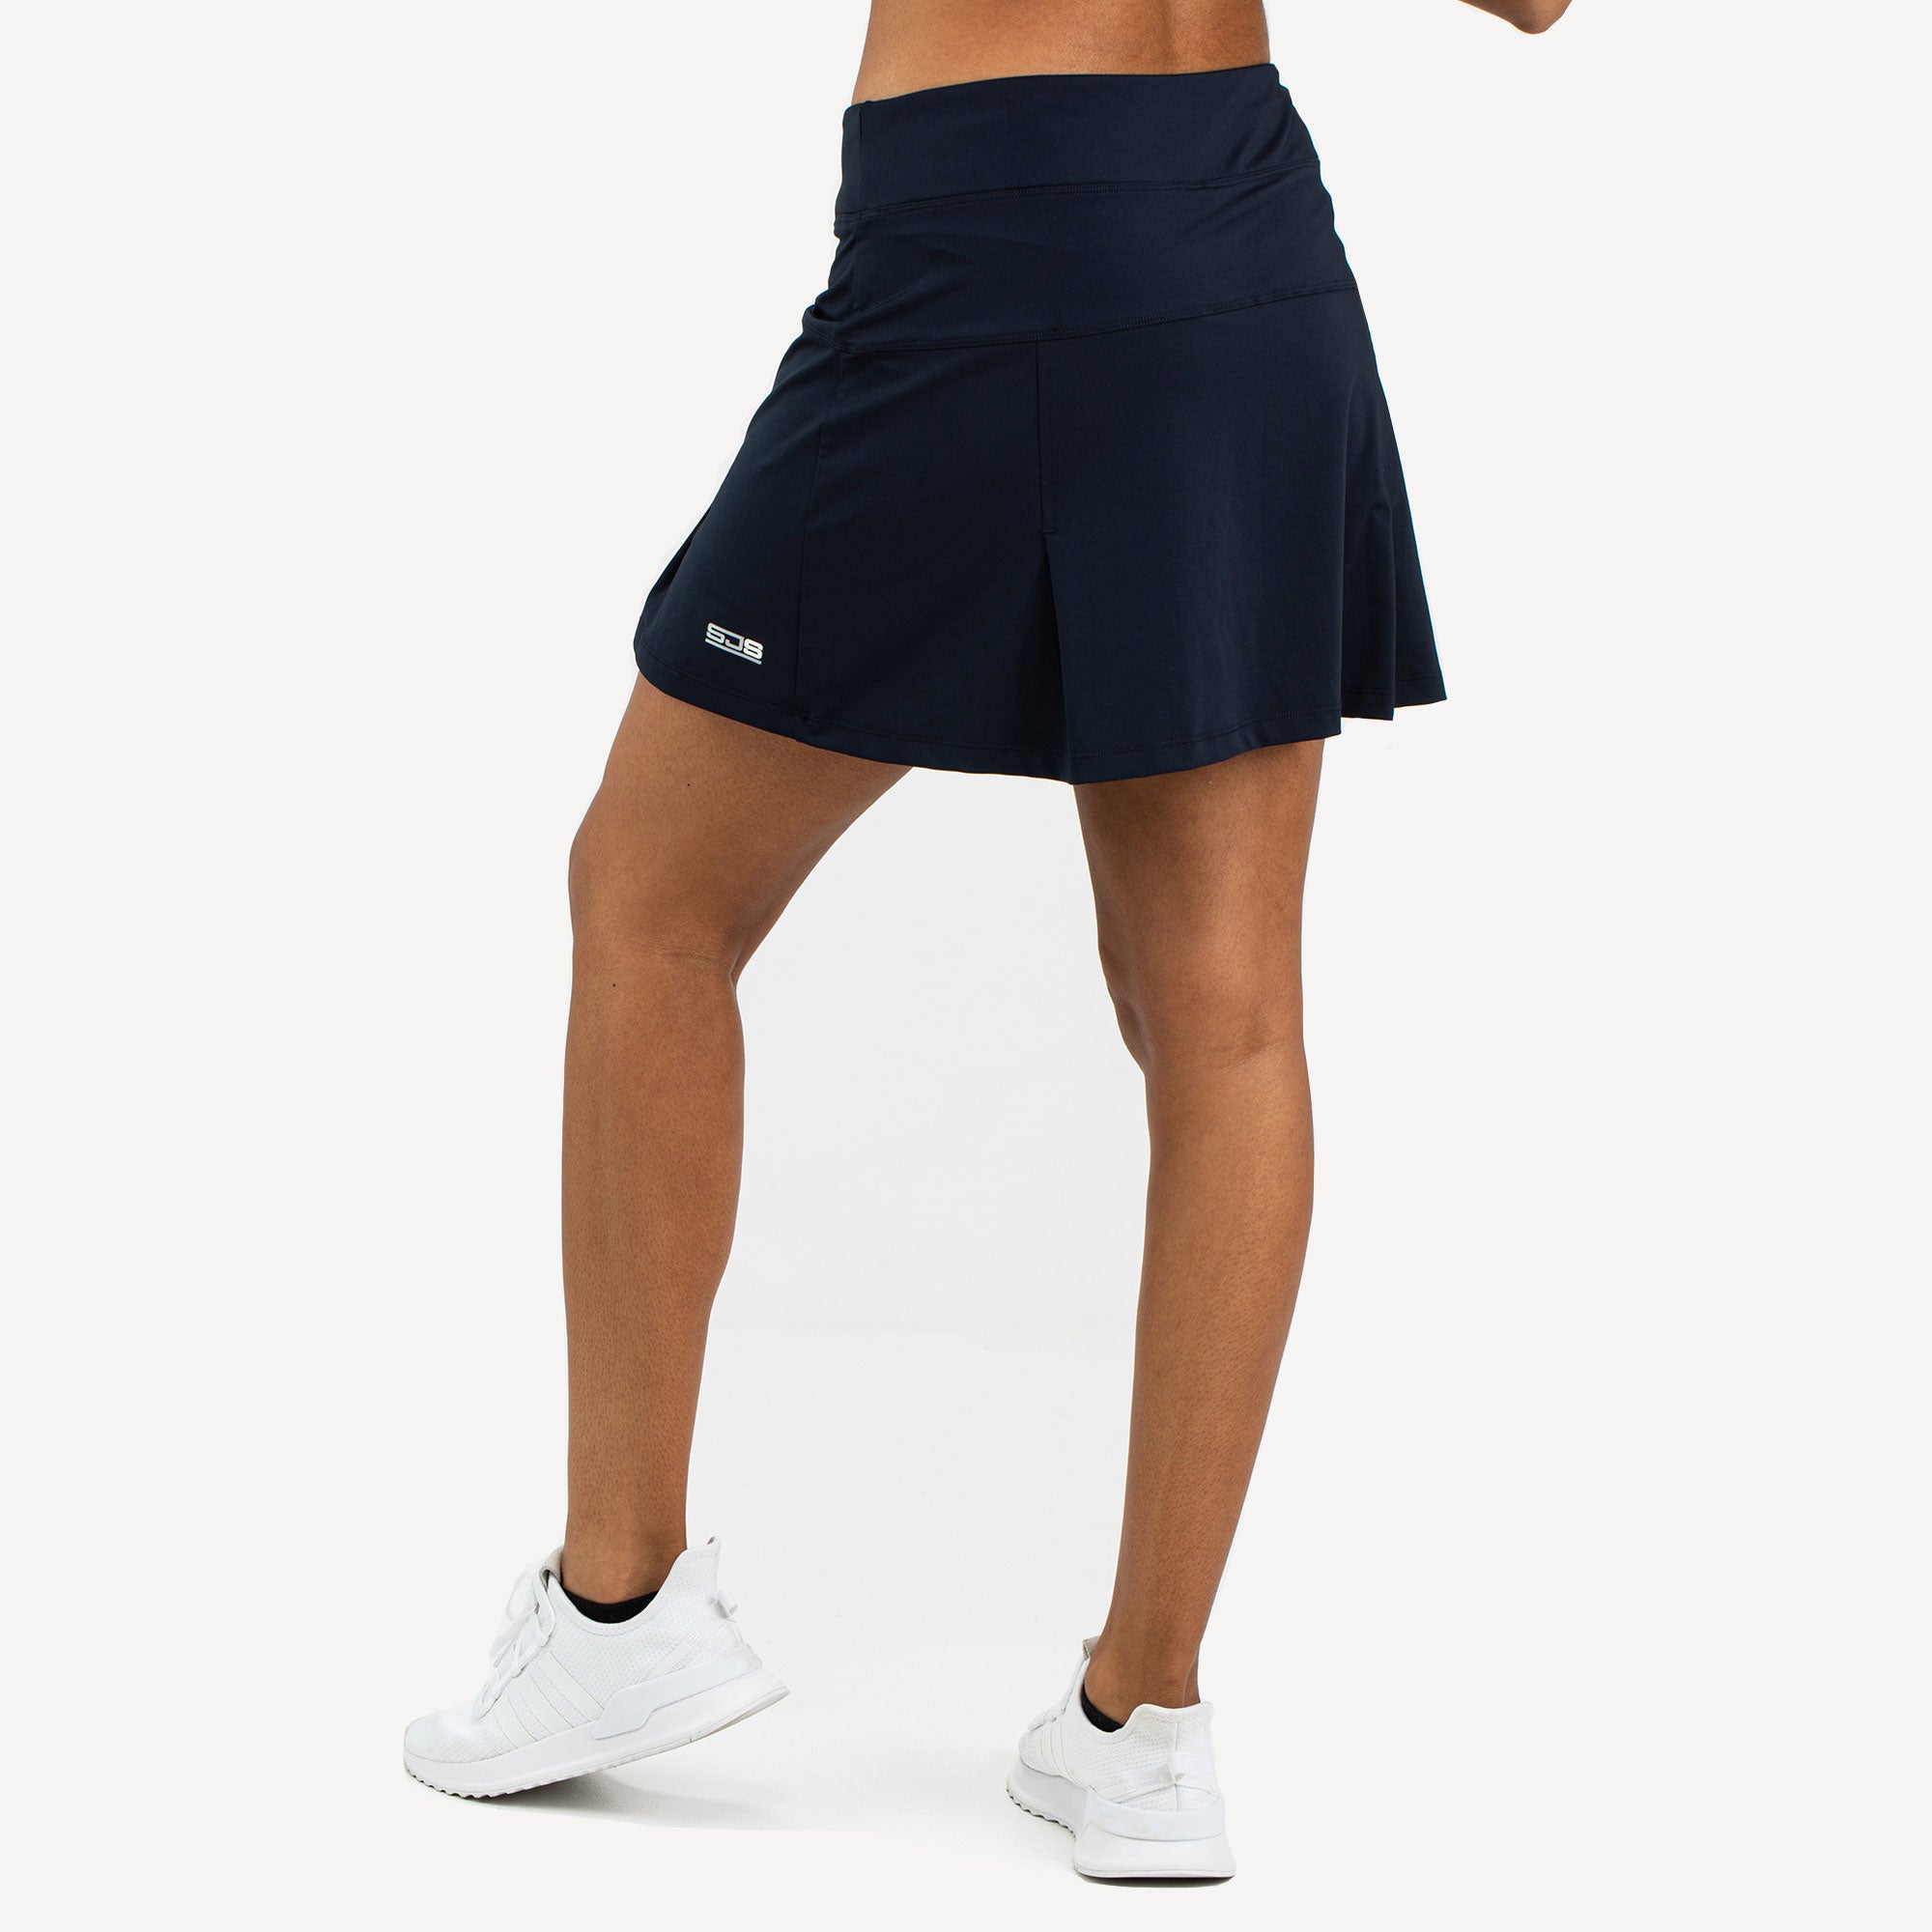 Sjeng Sports Monica Women's Tennis Skirt Blue (2)